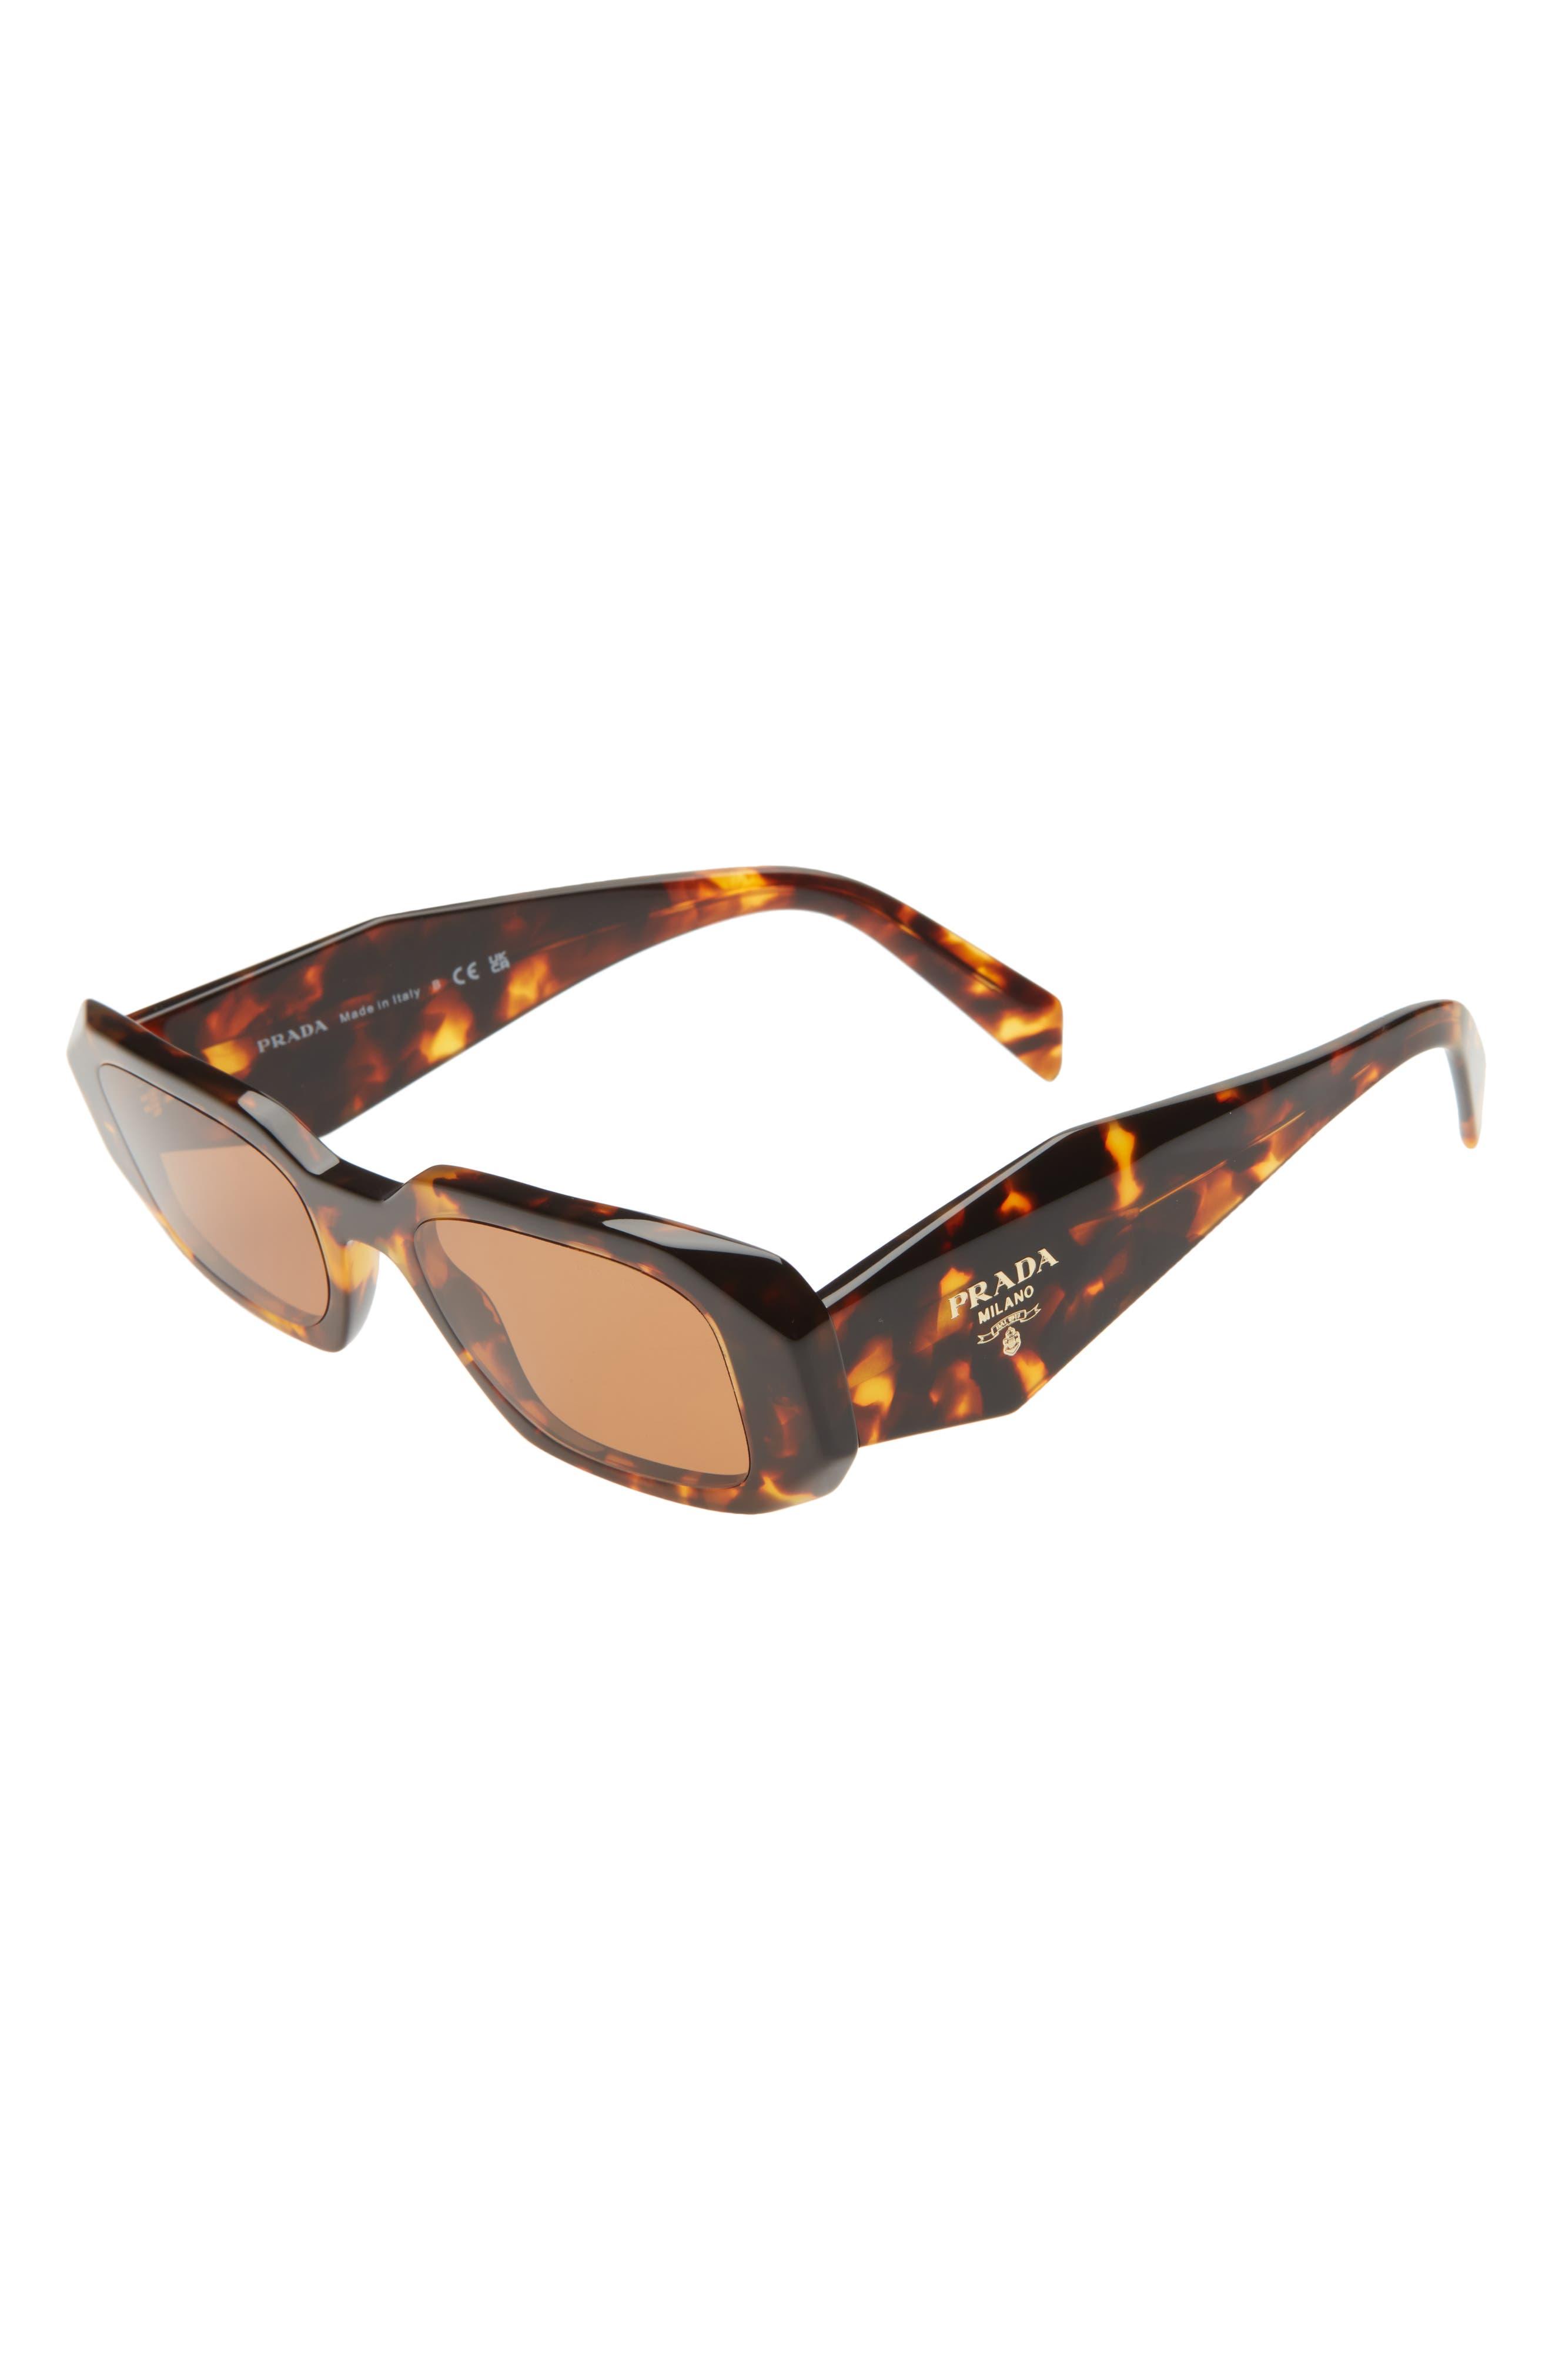 Prada Runway 49mm Rectangle Sunglasses in Brown | Lyst